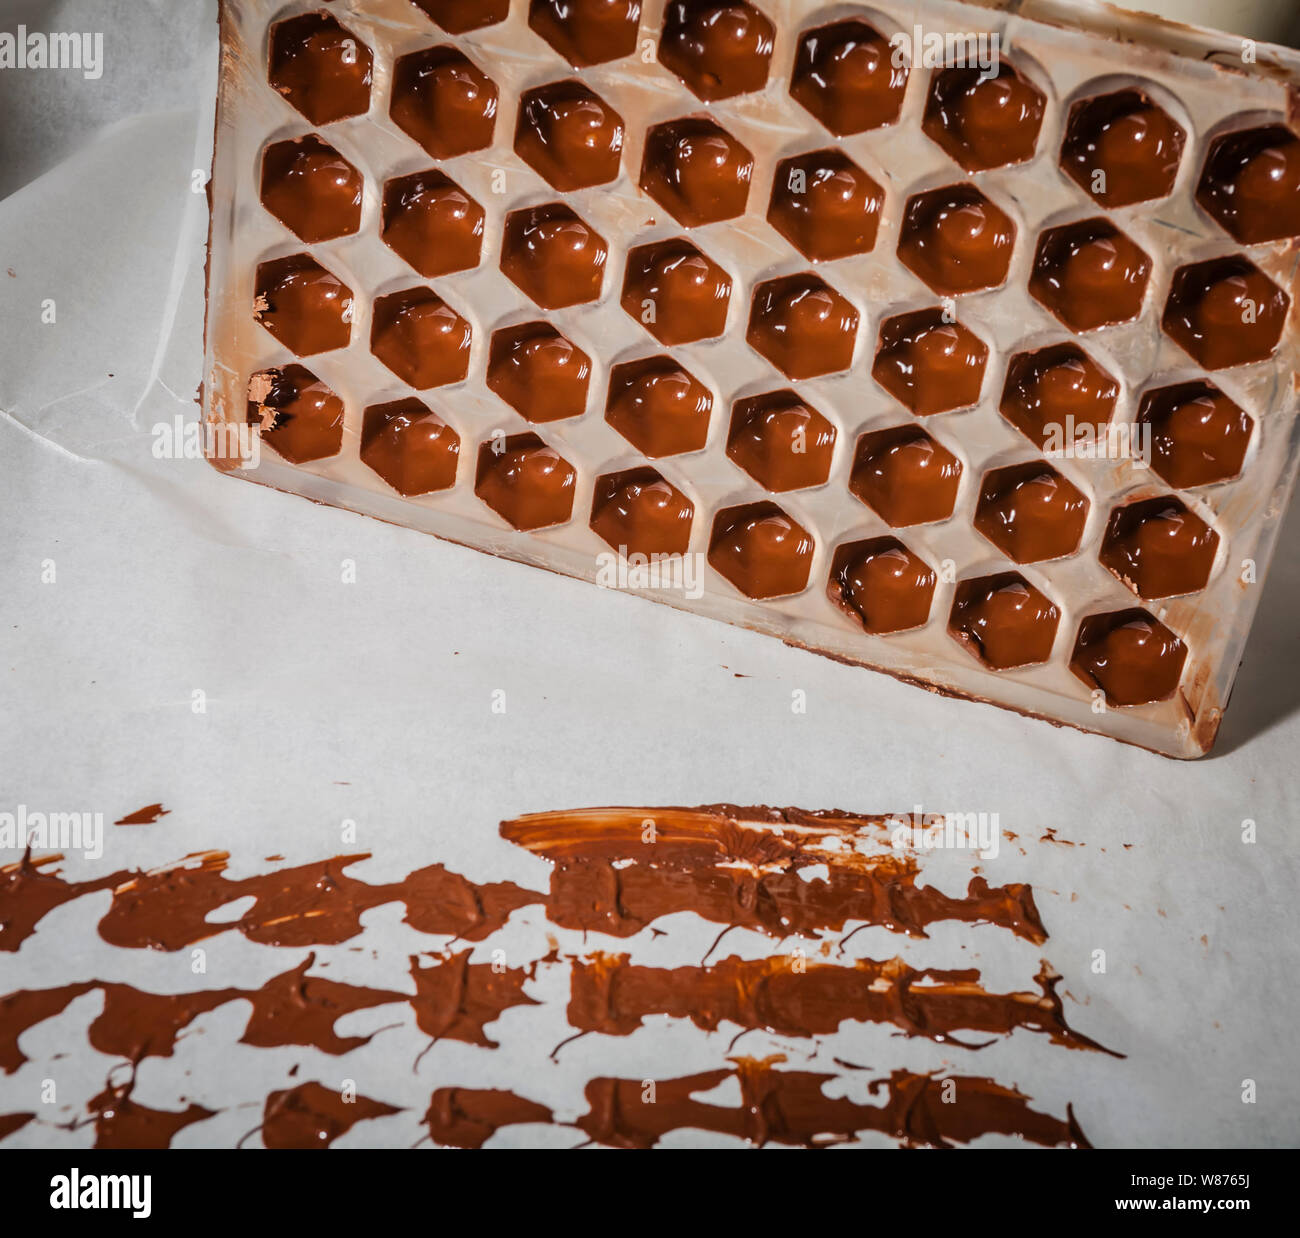 Un moule pour la fabrication de chocolats plein de chocolat fondu au chocolat avec des marques sur le papier Banque D'Images